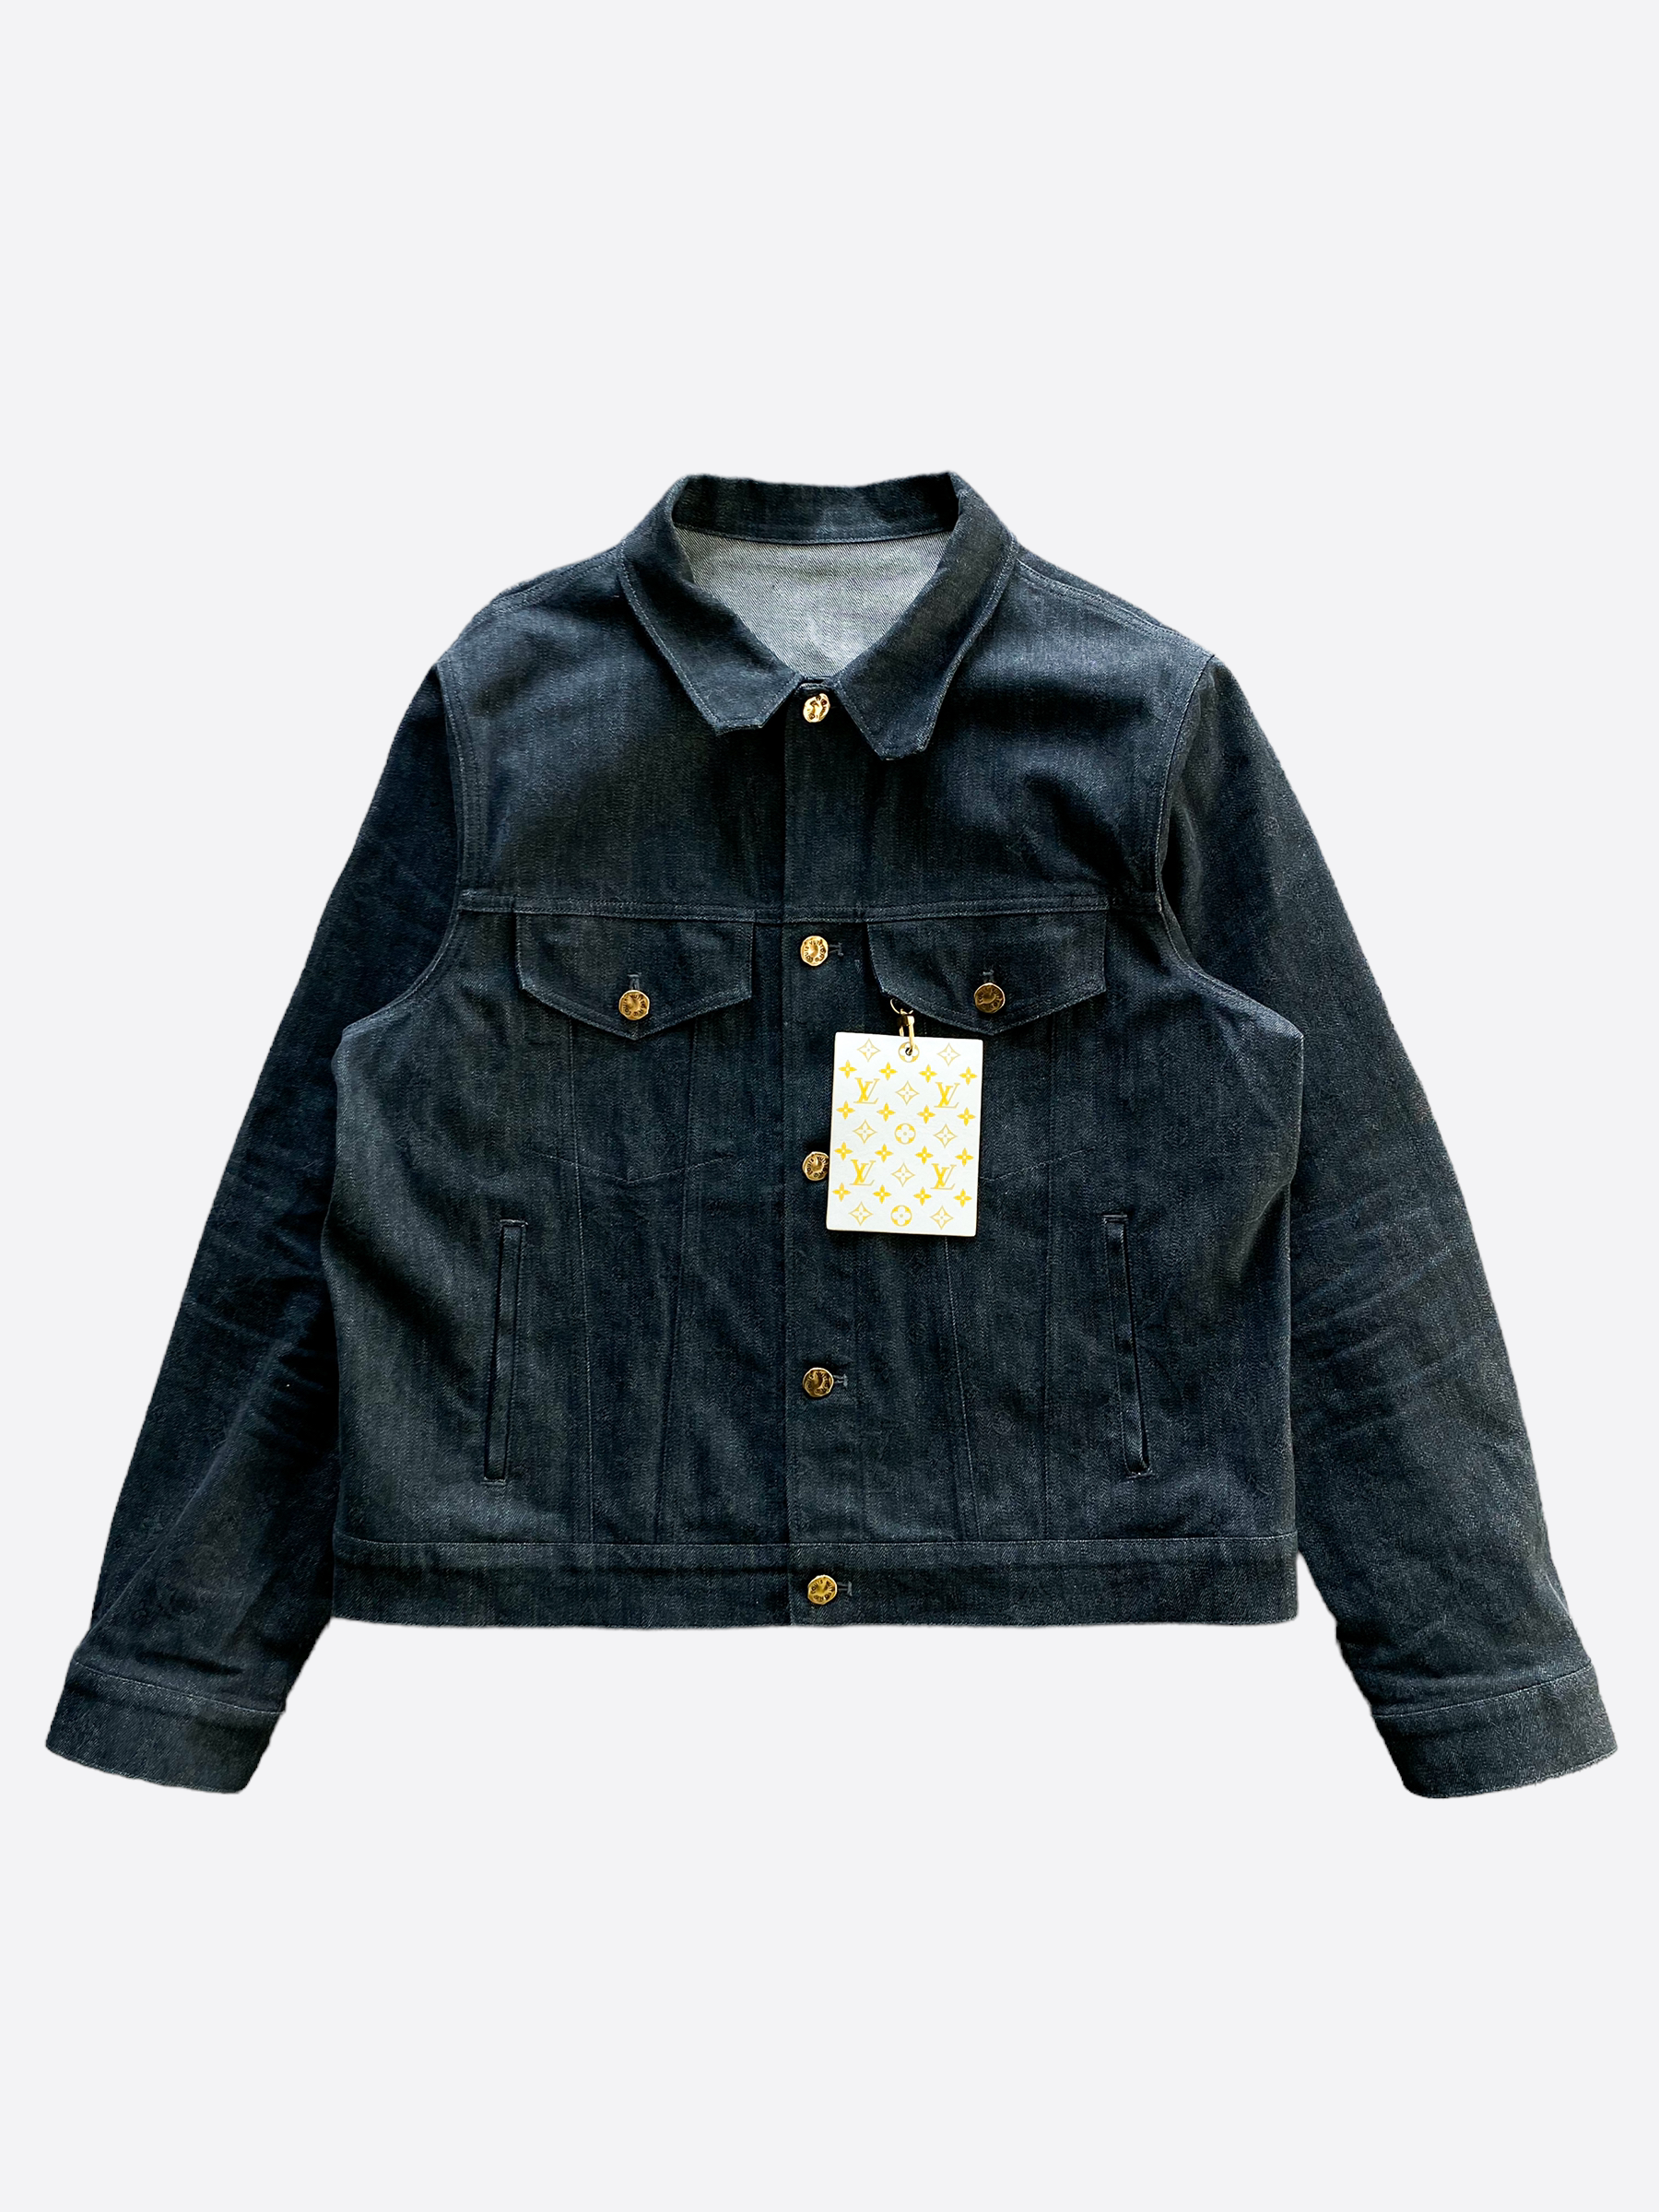 Louis Vuitton - DNA Denim Jacket - Indigo - Men - Size: 50 - Luxury